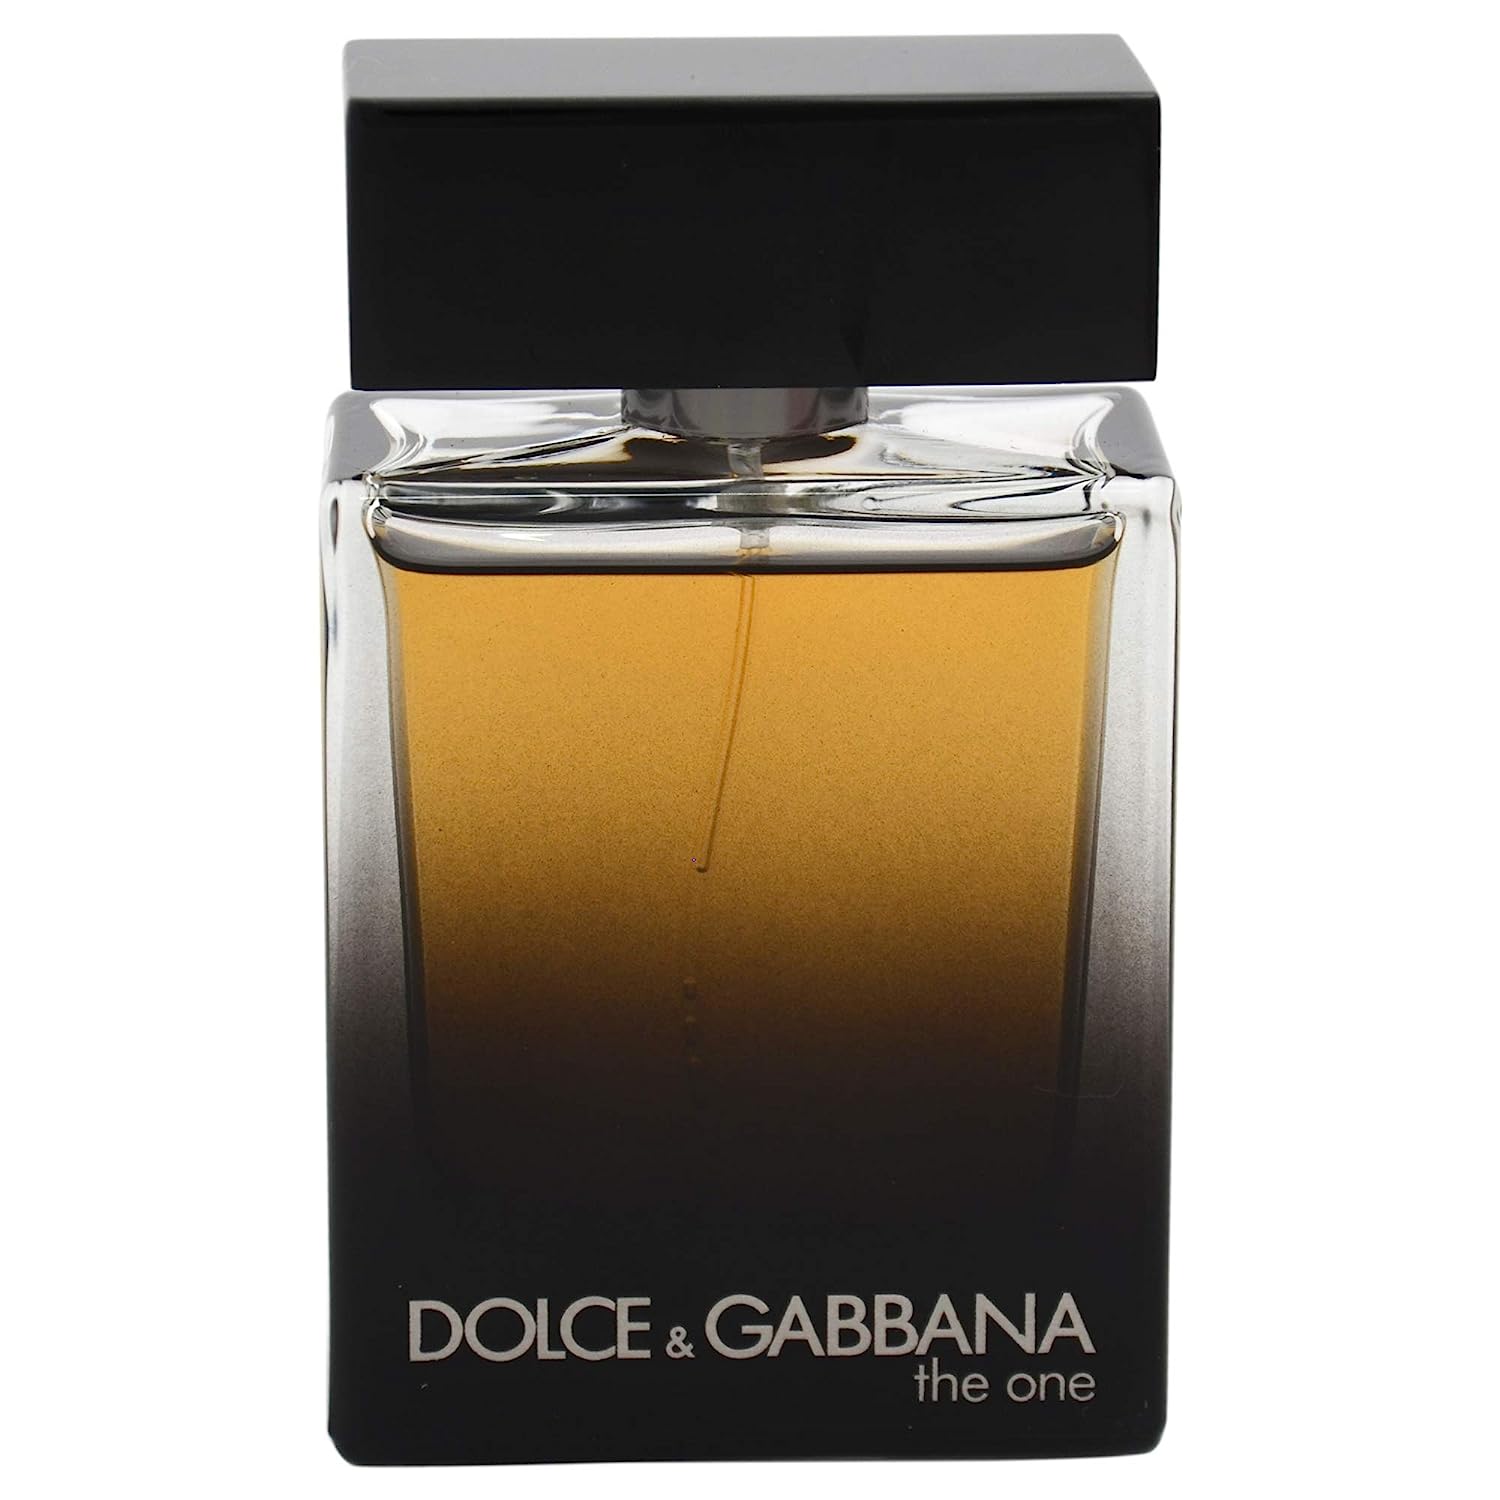 Dolce&Gabbana The One Eau de Parfum, 2.5 oz - Macy's